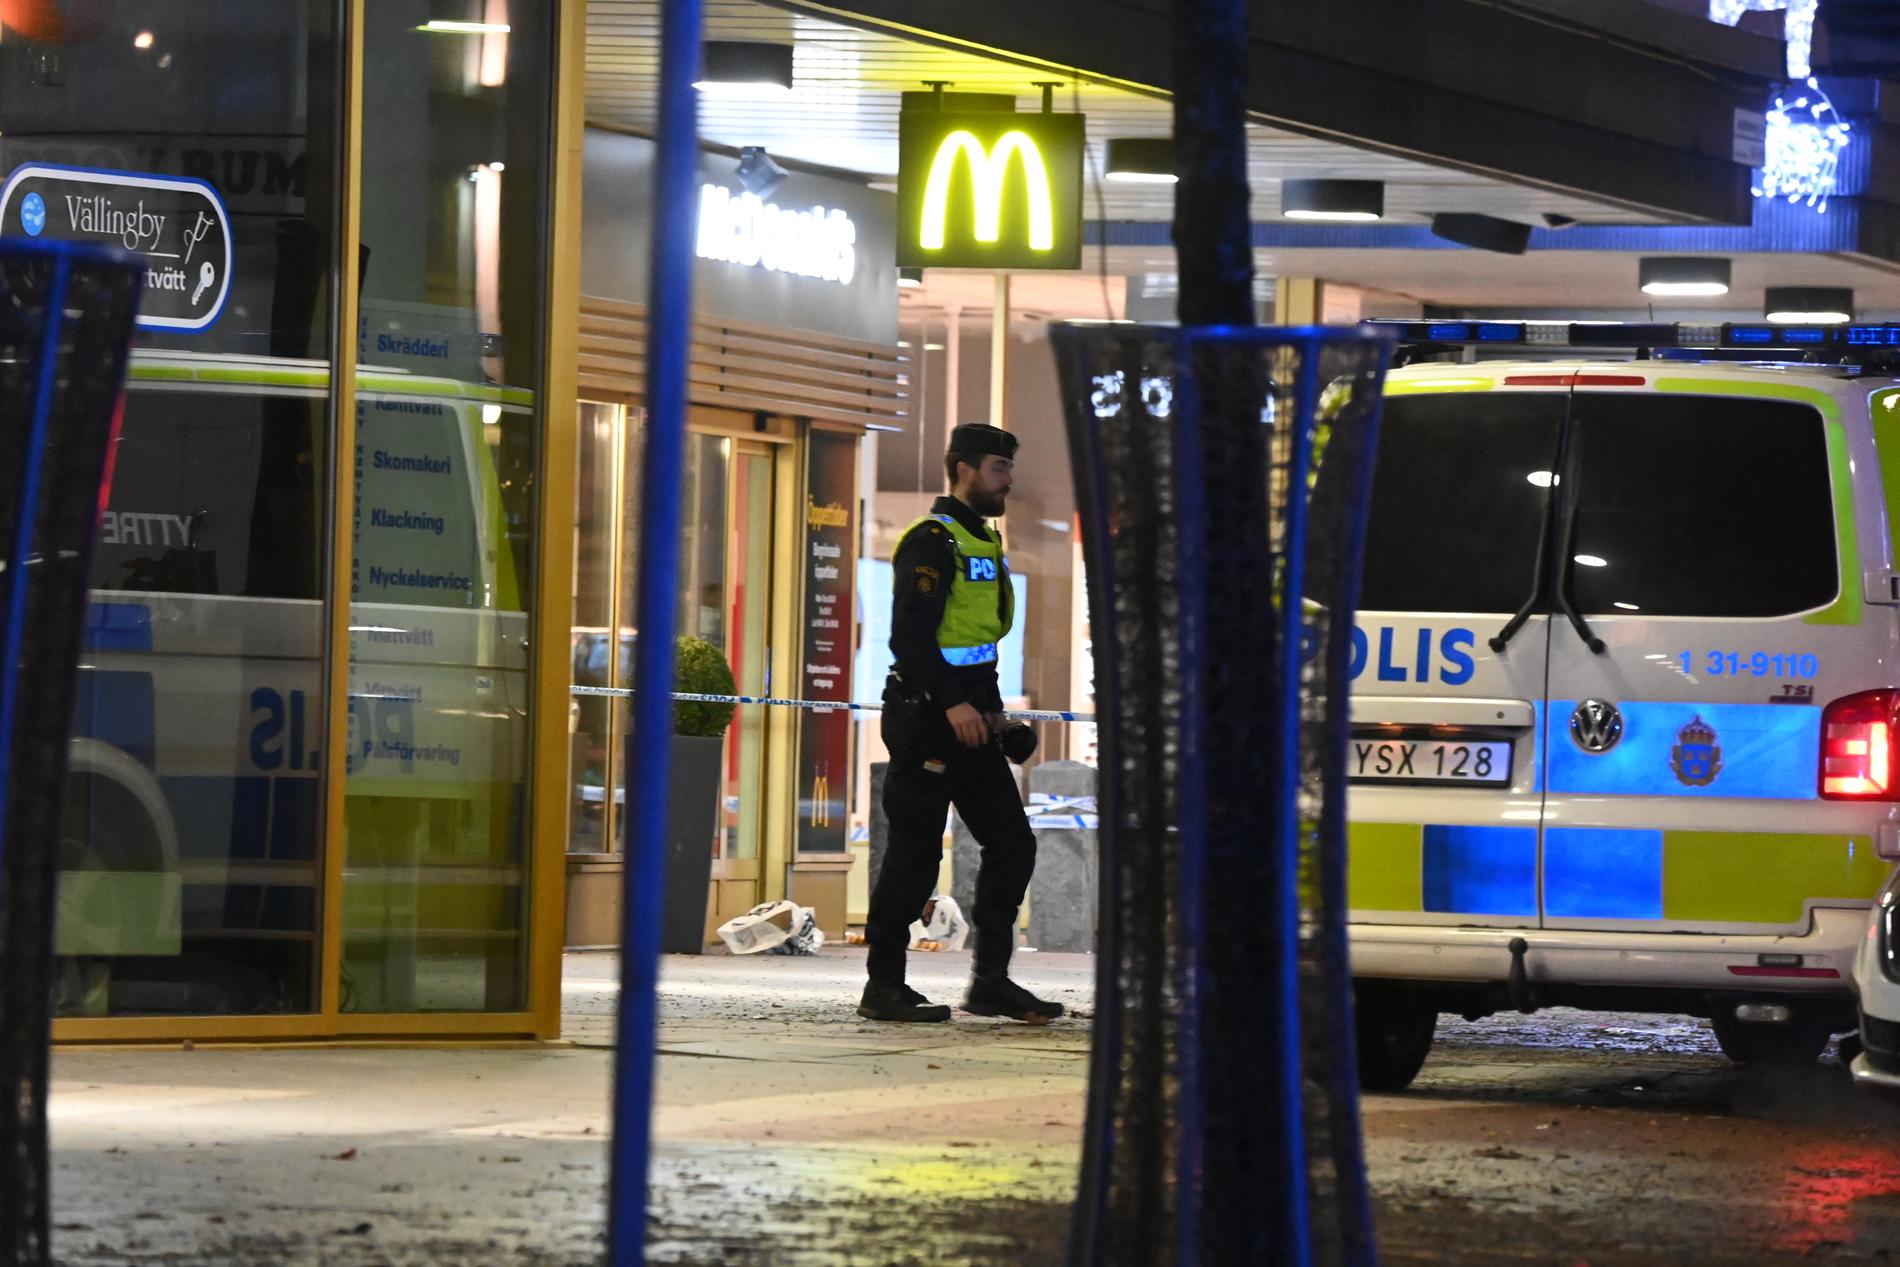 En man i 20-årsåldern dödades och ytterligare två personer skadades i en skottlossning i Vällingby på nyårsafton.